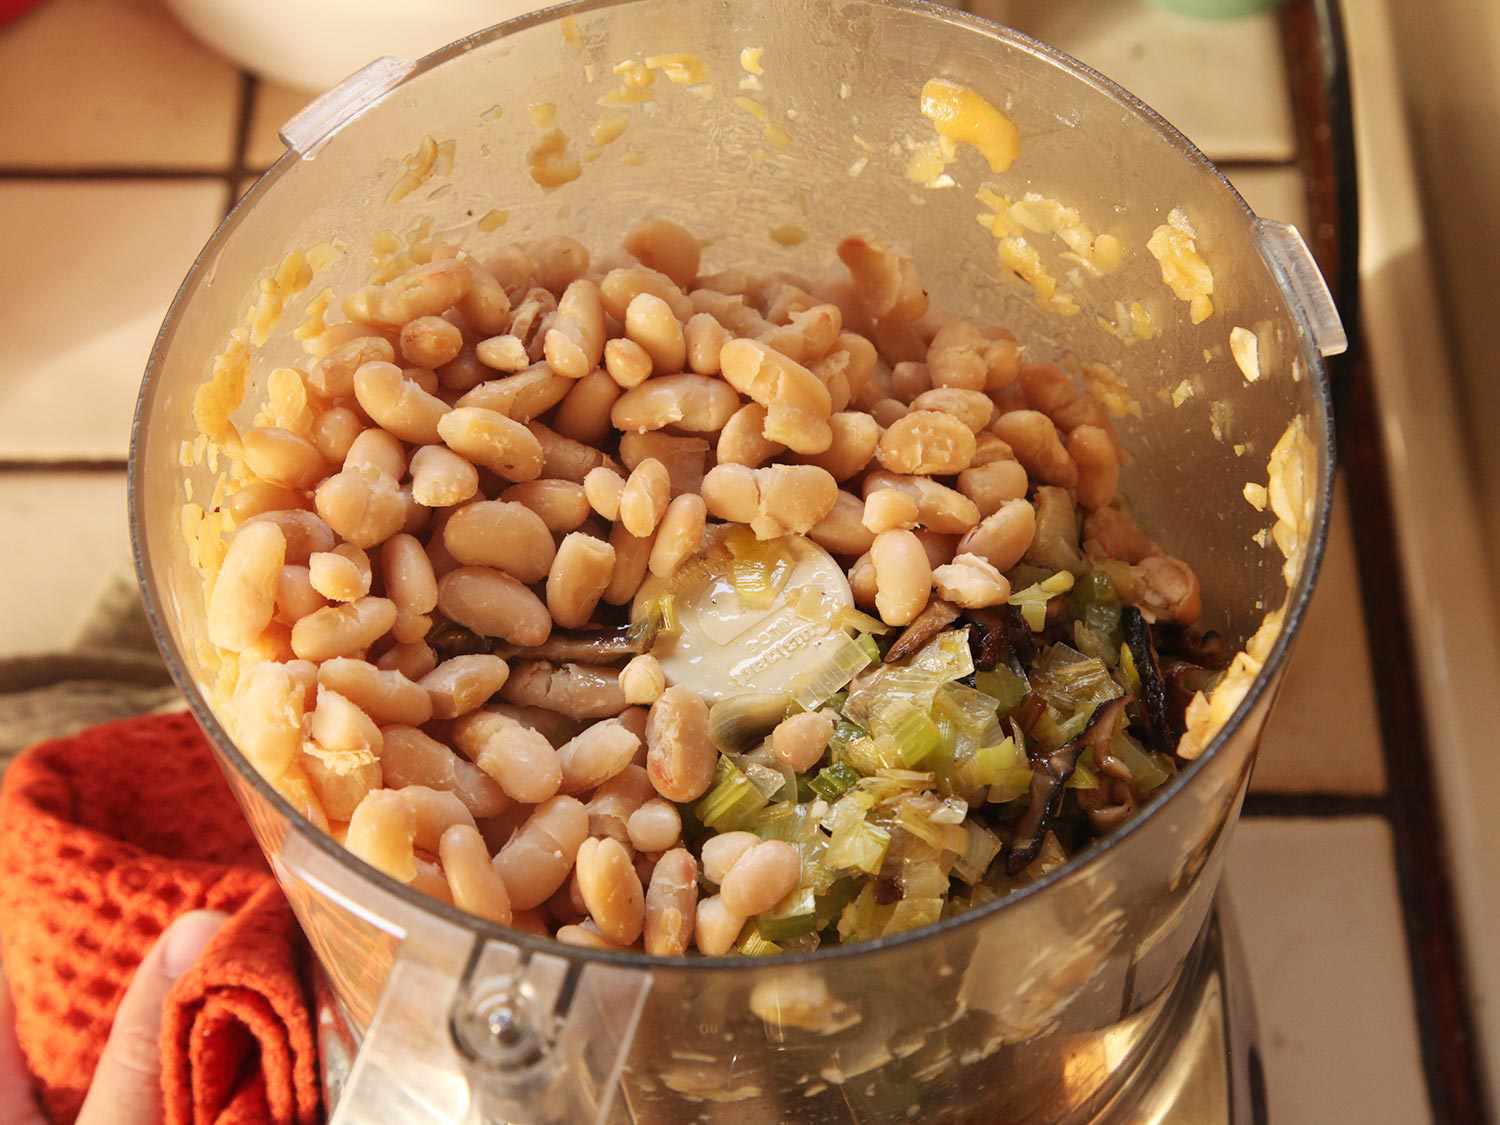 在一碗食品加工机中放入意大利豆和香菇混合物。